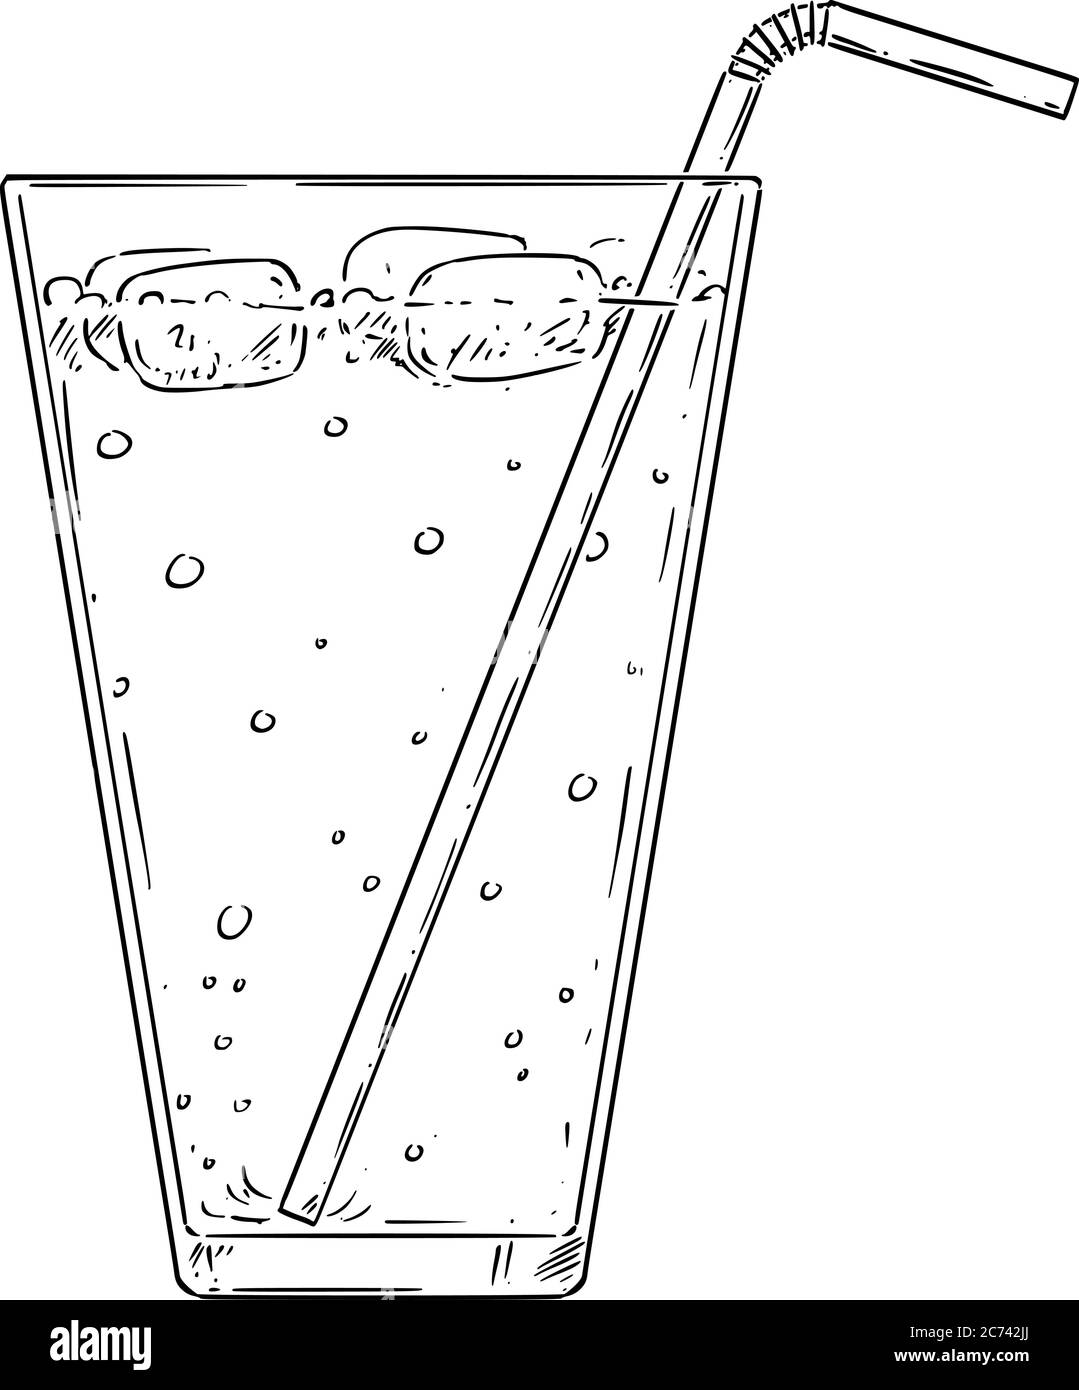 Vektor-Cartoon Zeichnung Illustration von kalten Limonade, Cocktail oder trinken mit Stroh und Eis. Stock Vektor